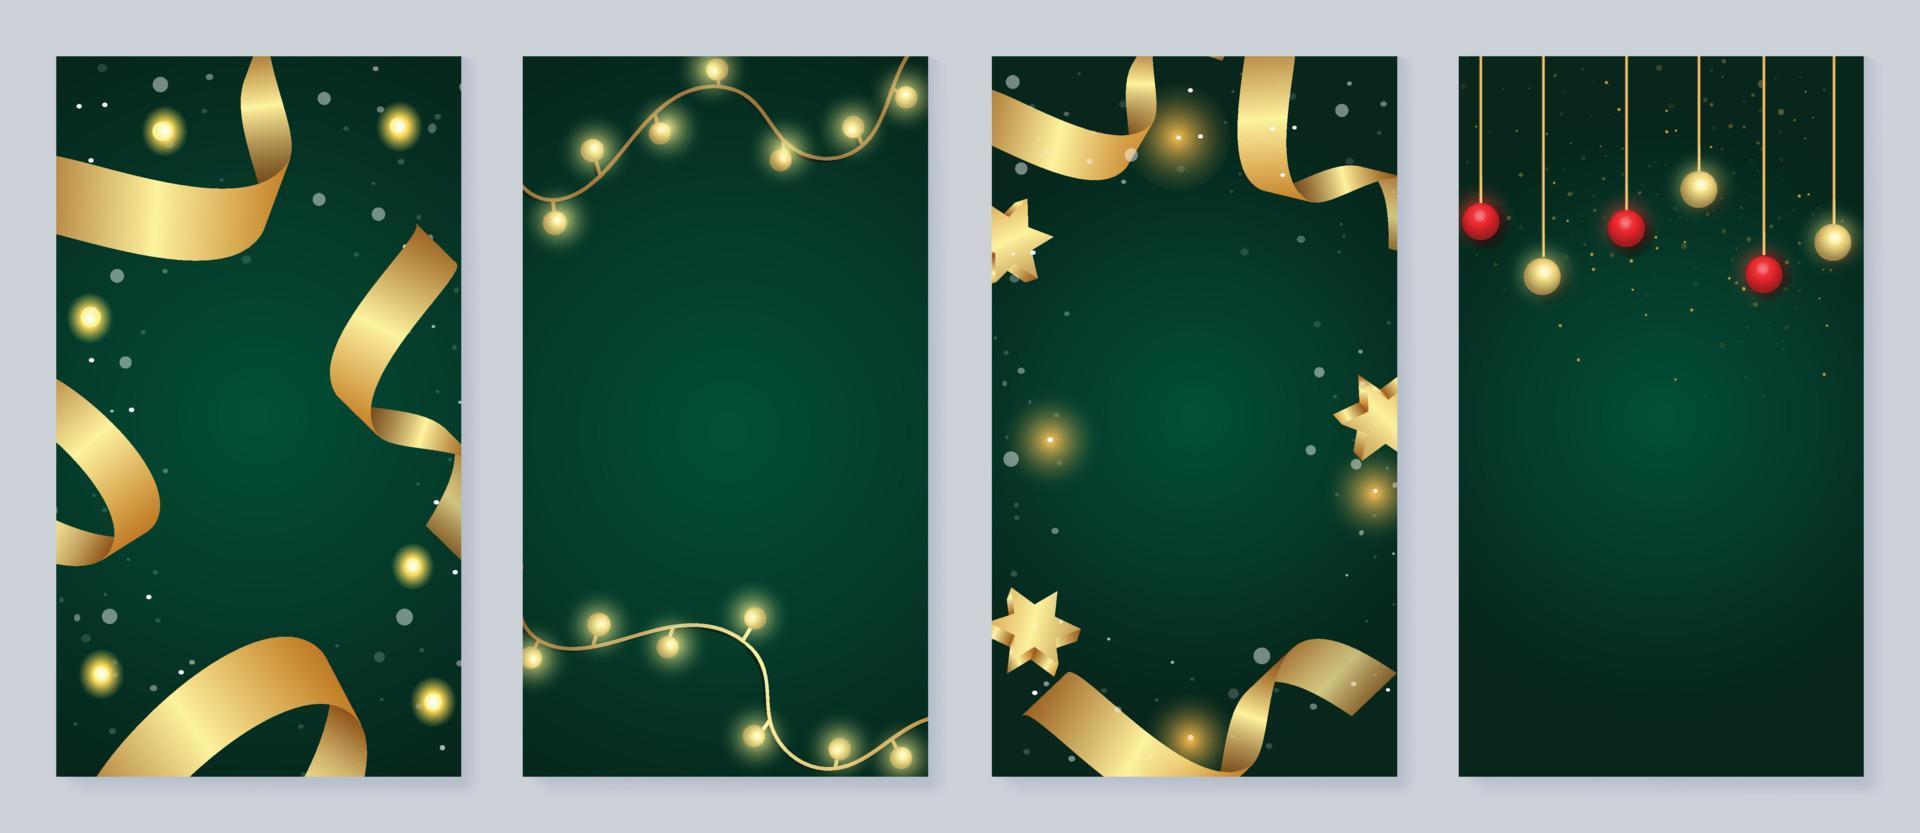 uppsättning av lyx jul mall affisch. lutning gyllene jul element av band, glöd ljus tråd, stjärna, hängande bollar. design illustration för baner, kort, social media, reklam, hemsida. vektor